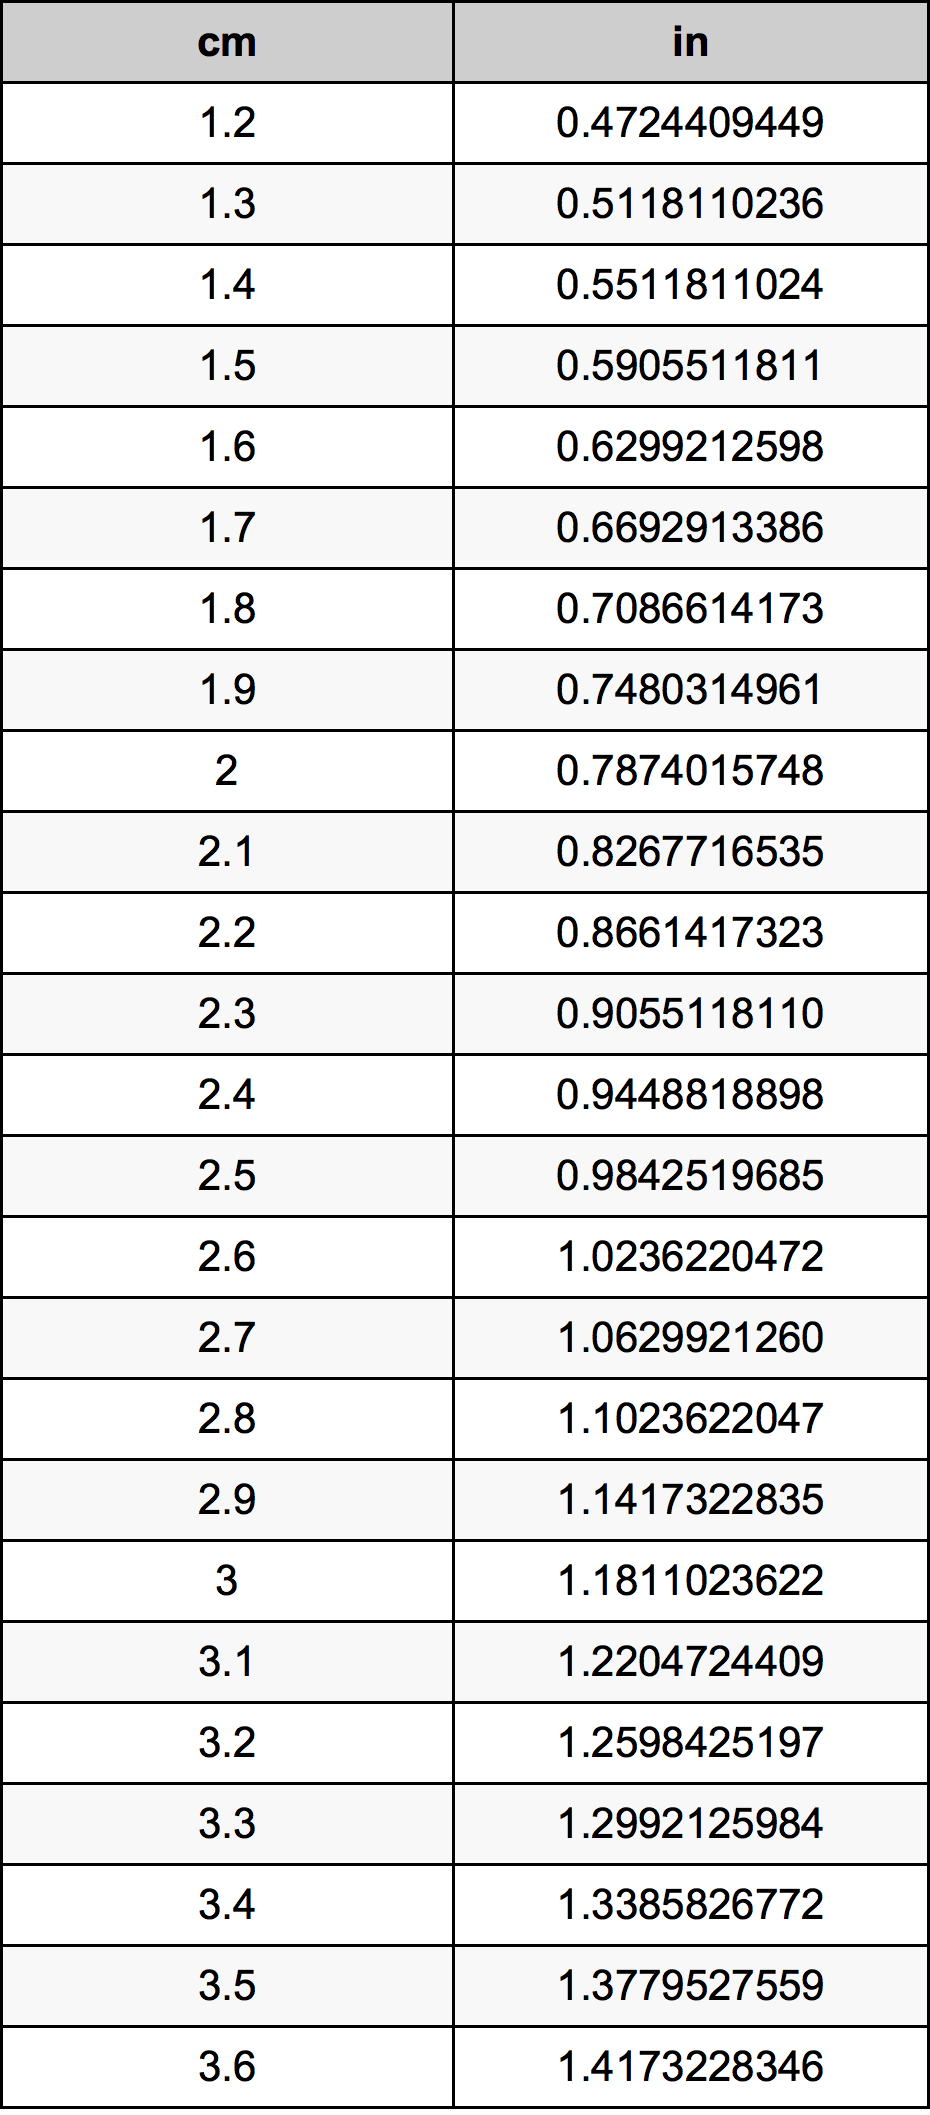 2.4 Centiméter átszámítási táblázat